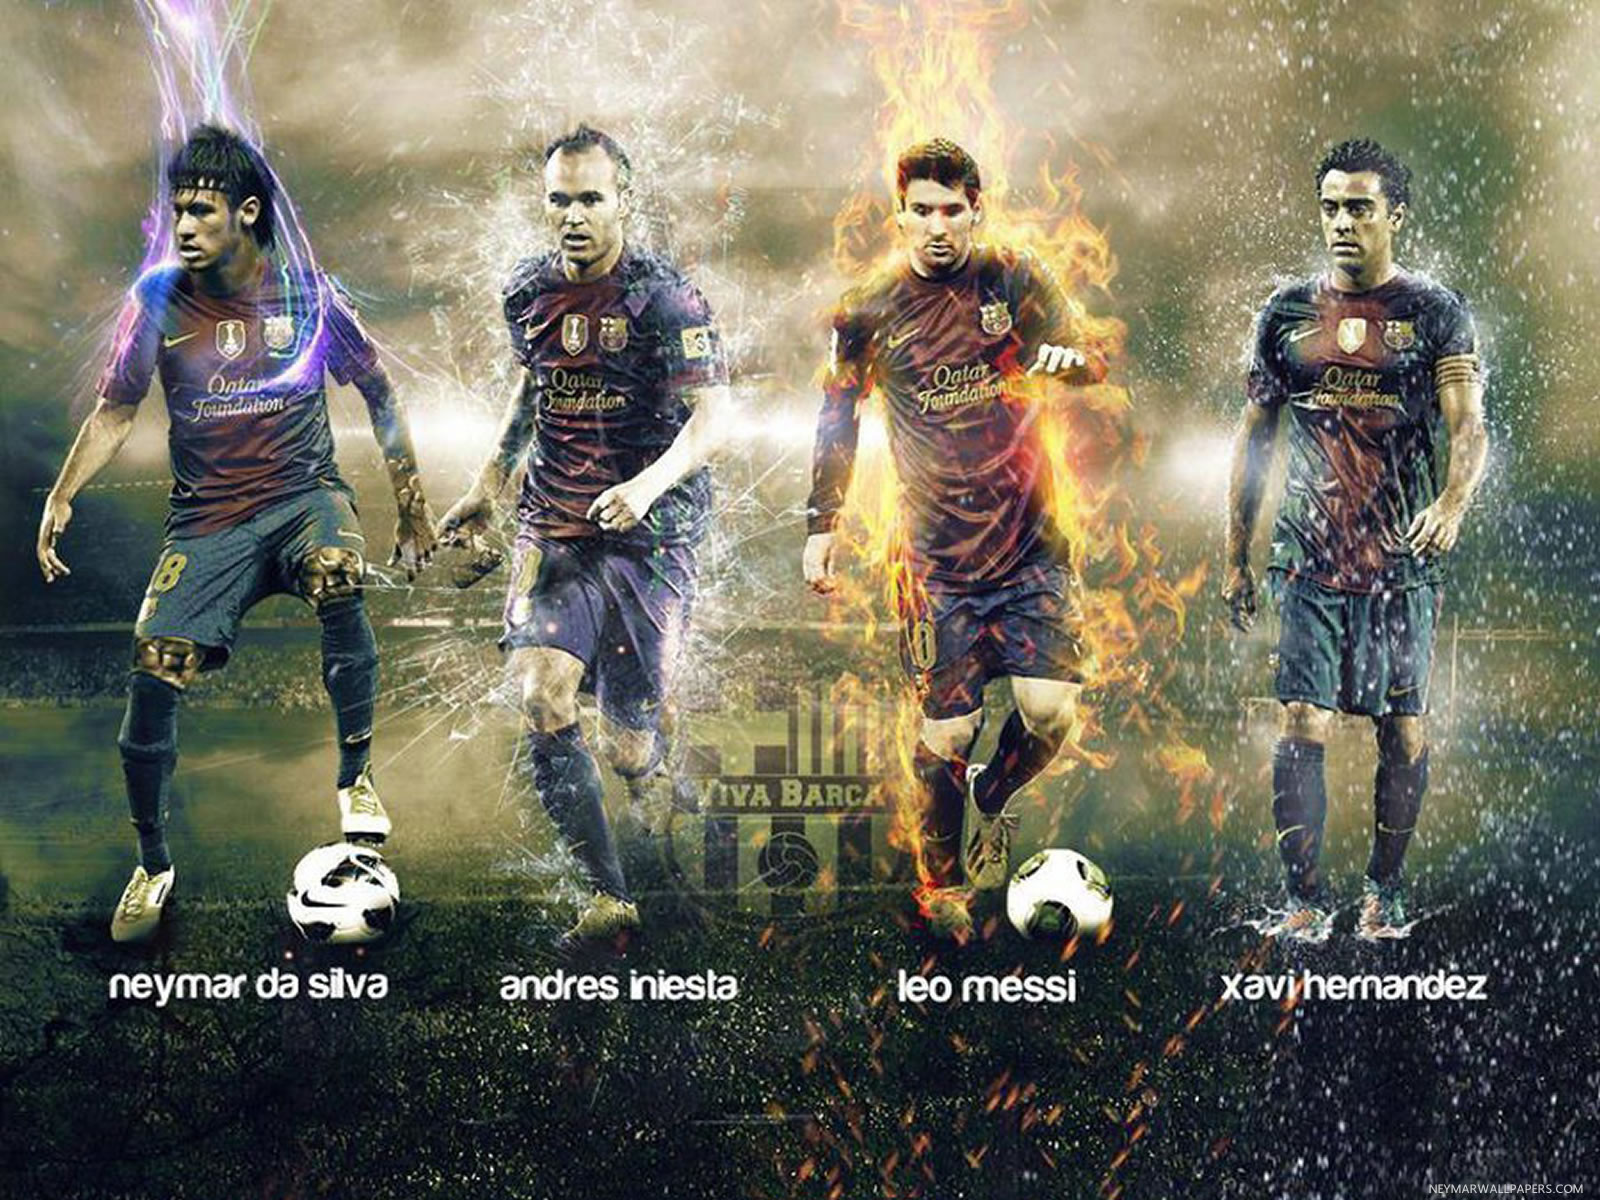 50+] Neymar Jr and Messi Wallpaper - WallpaperSafari